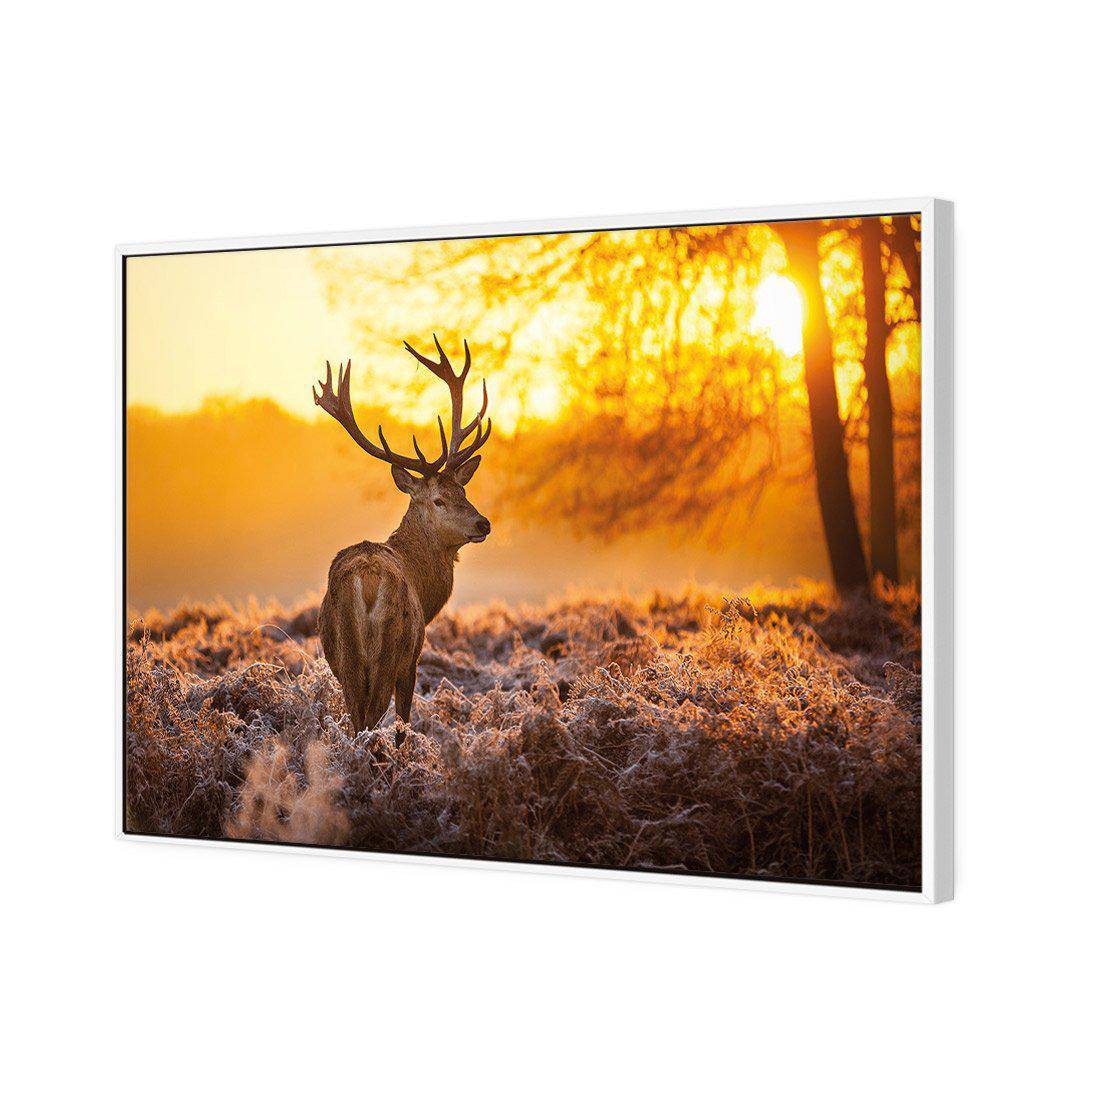 Sunset Deer Returns Canvas Art-Canvas-Wall Art Designs-45x30cm-Canvas - White Frame-Wall Art Designs